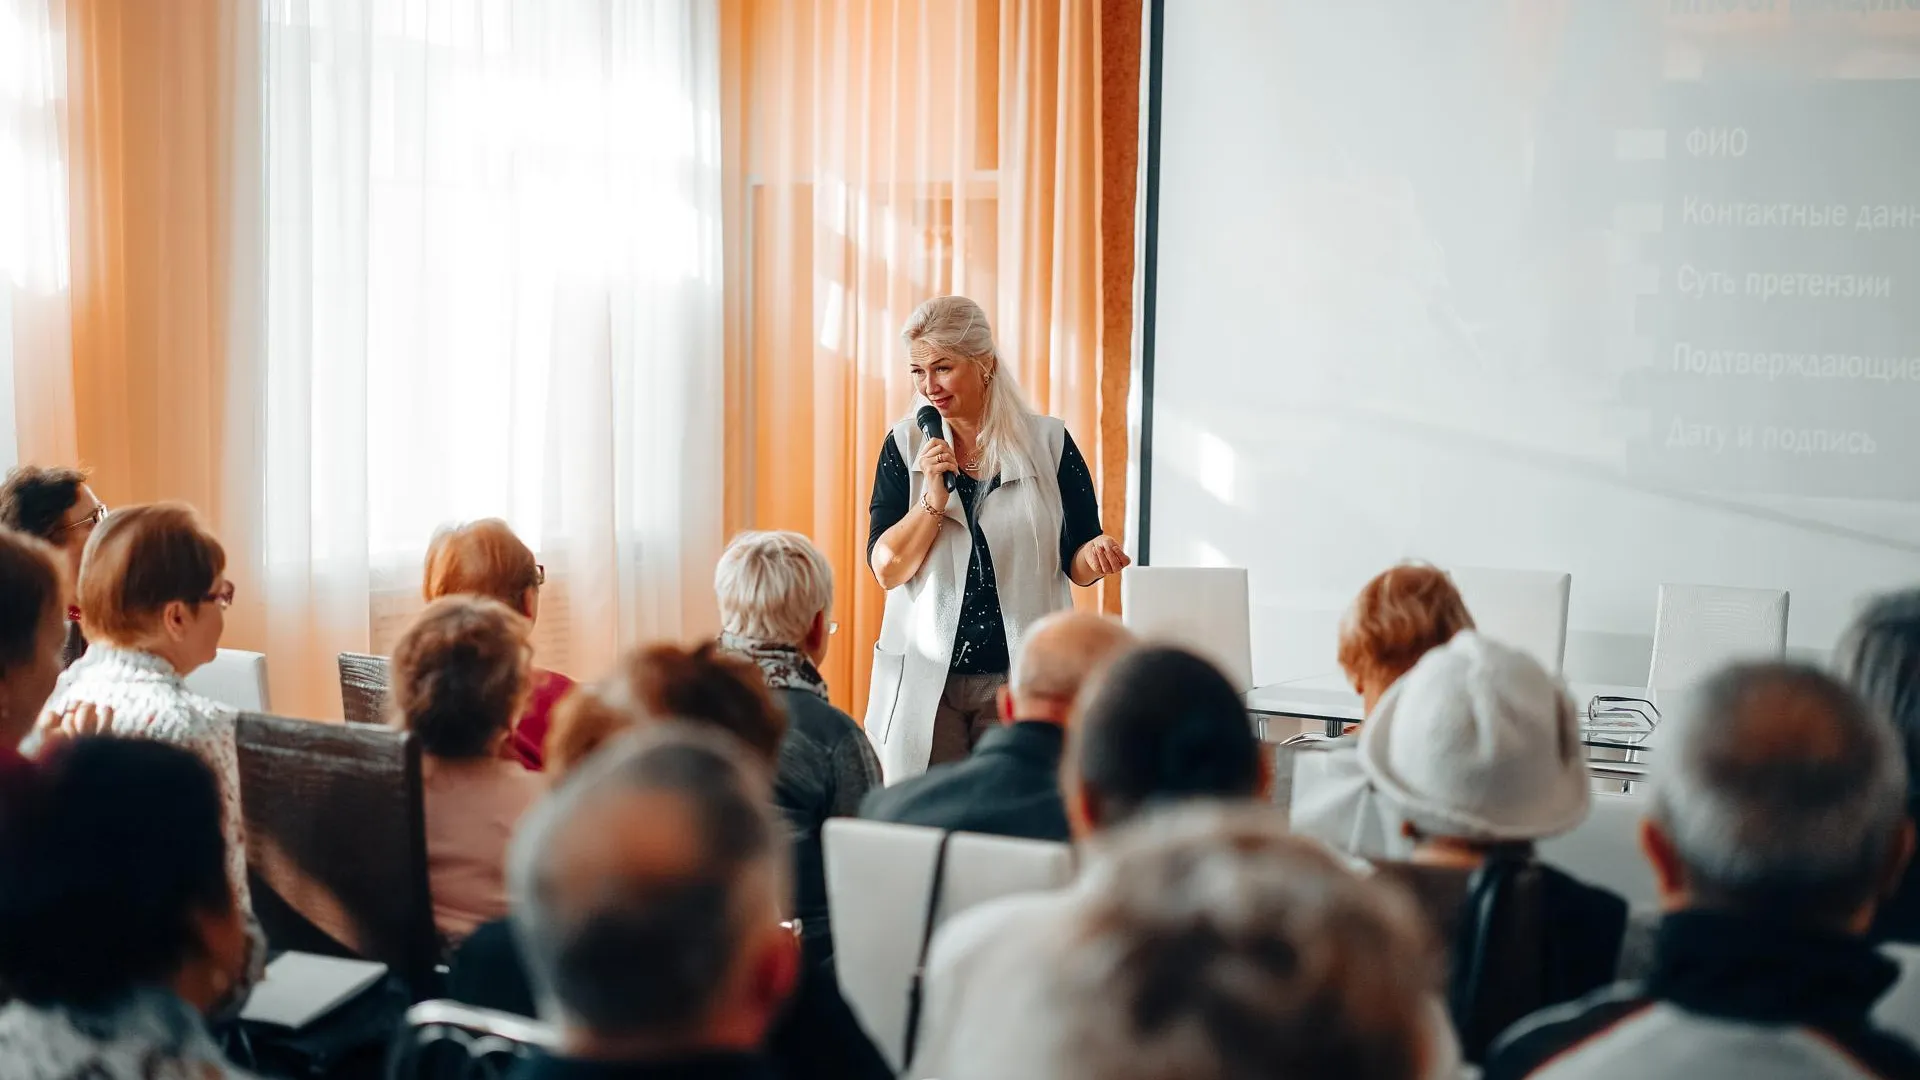 Обучающий семинар «Социальный навигатор» пройдет для пенсионеров из Орехово-Зуевского округа